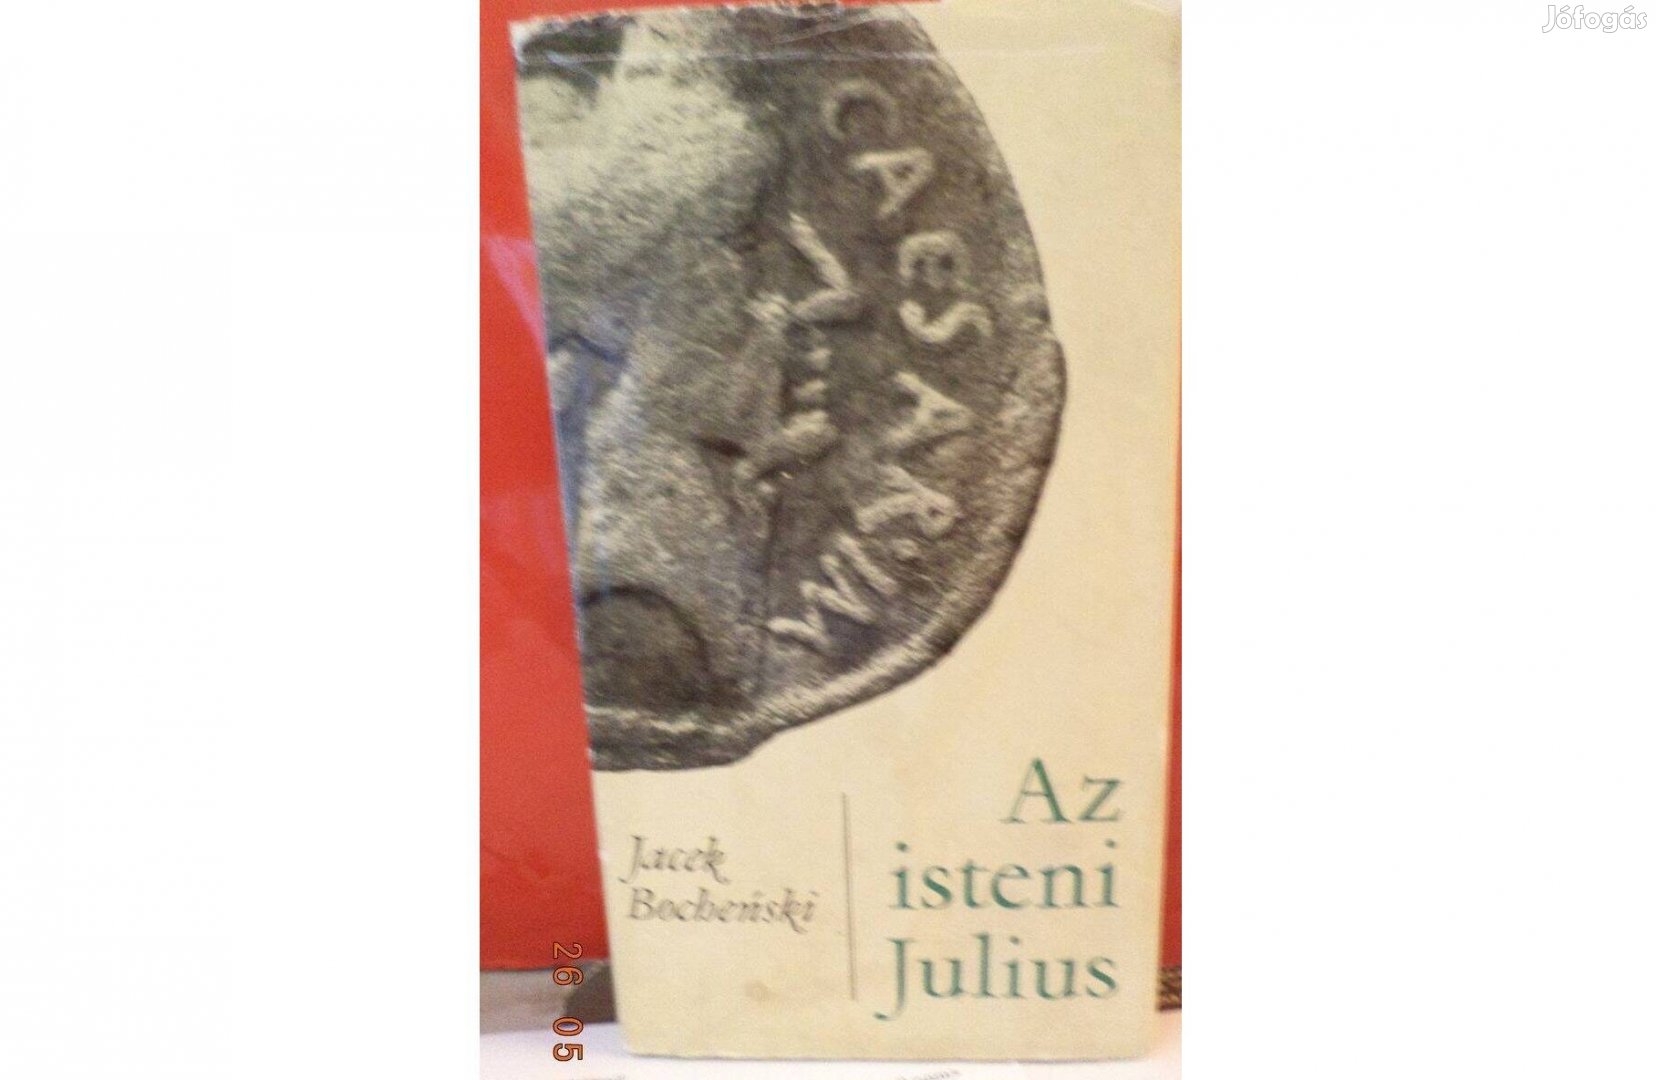 Jacek Bochenski: Az isteni Julius